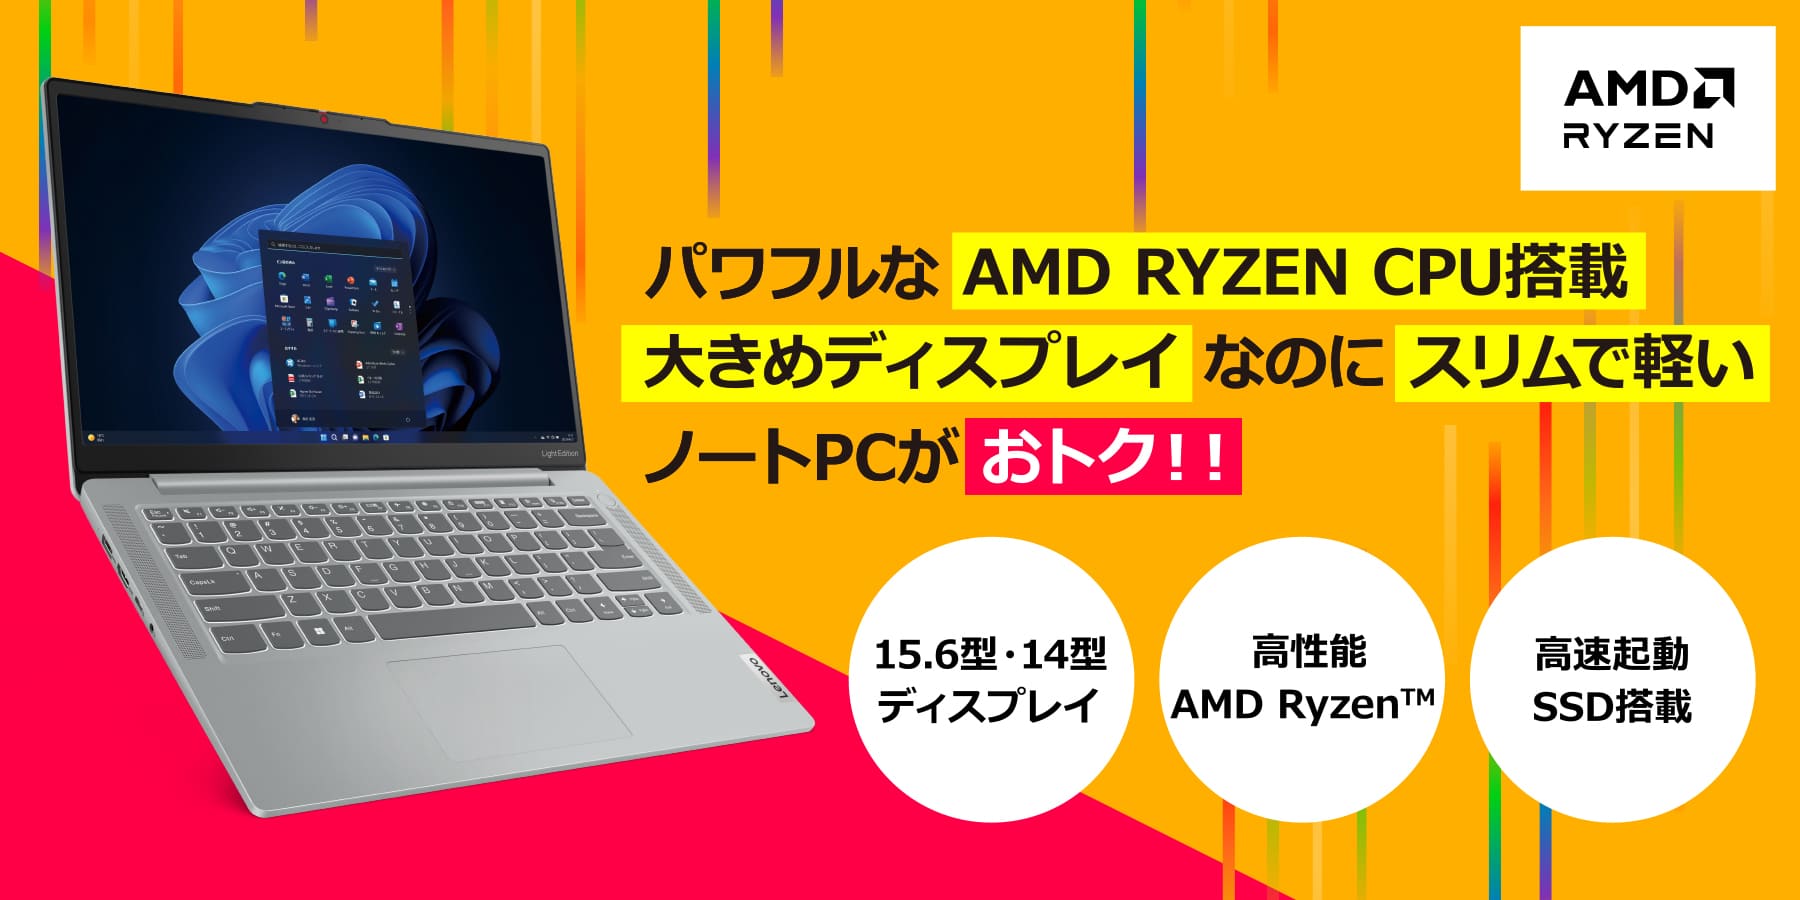 パワフルな AMD RYZEN CPU搭載大きめディスプレイなのにスリムで軽いノートPCがおトク!!